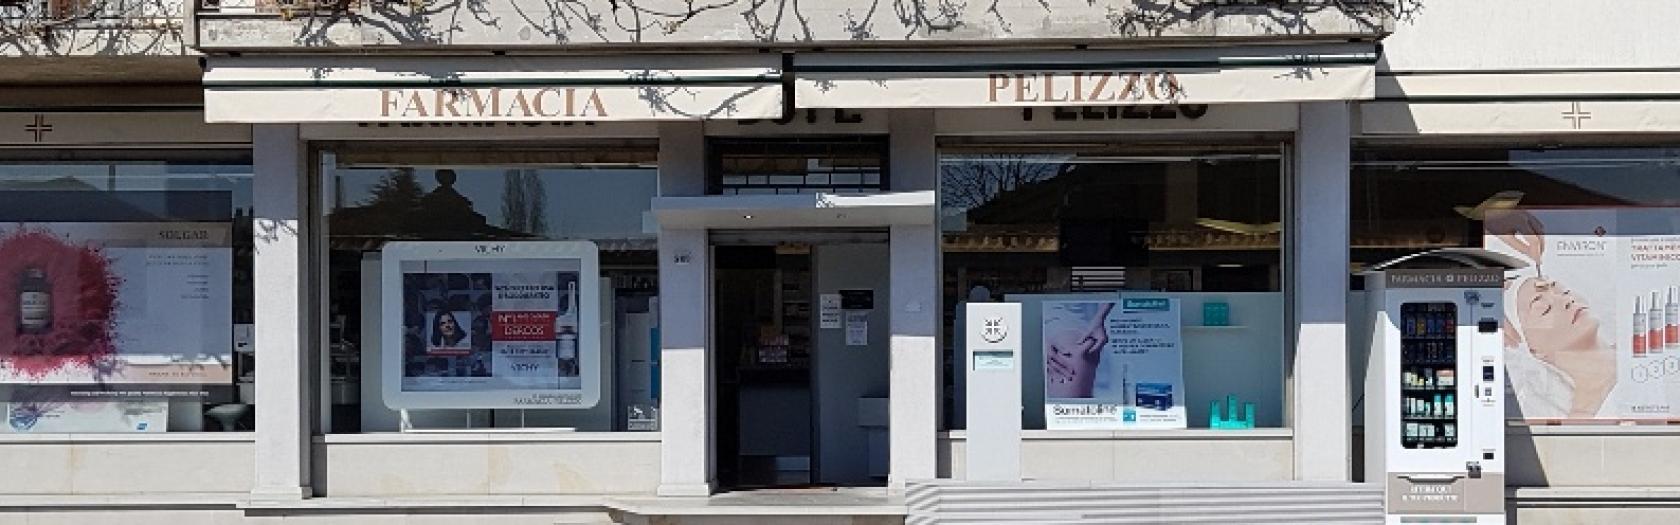 Farmacia Pelizzo